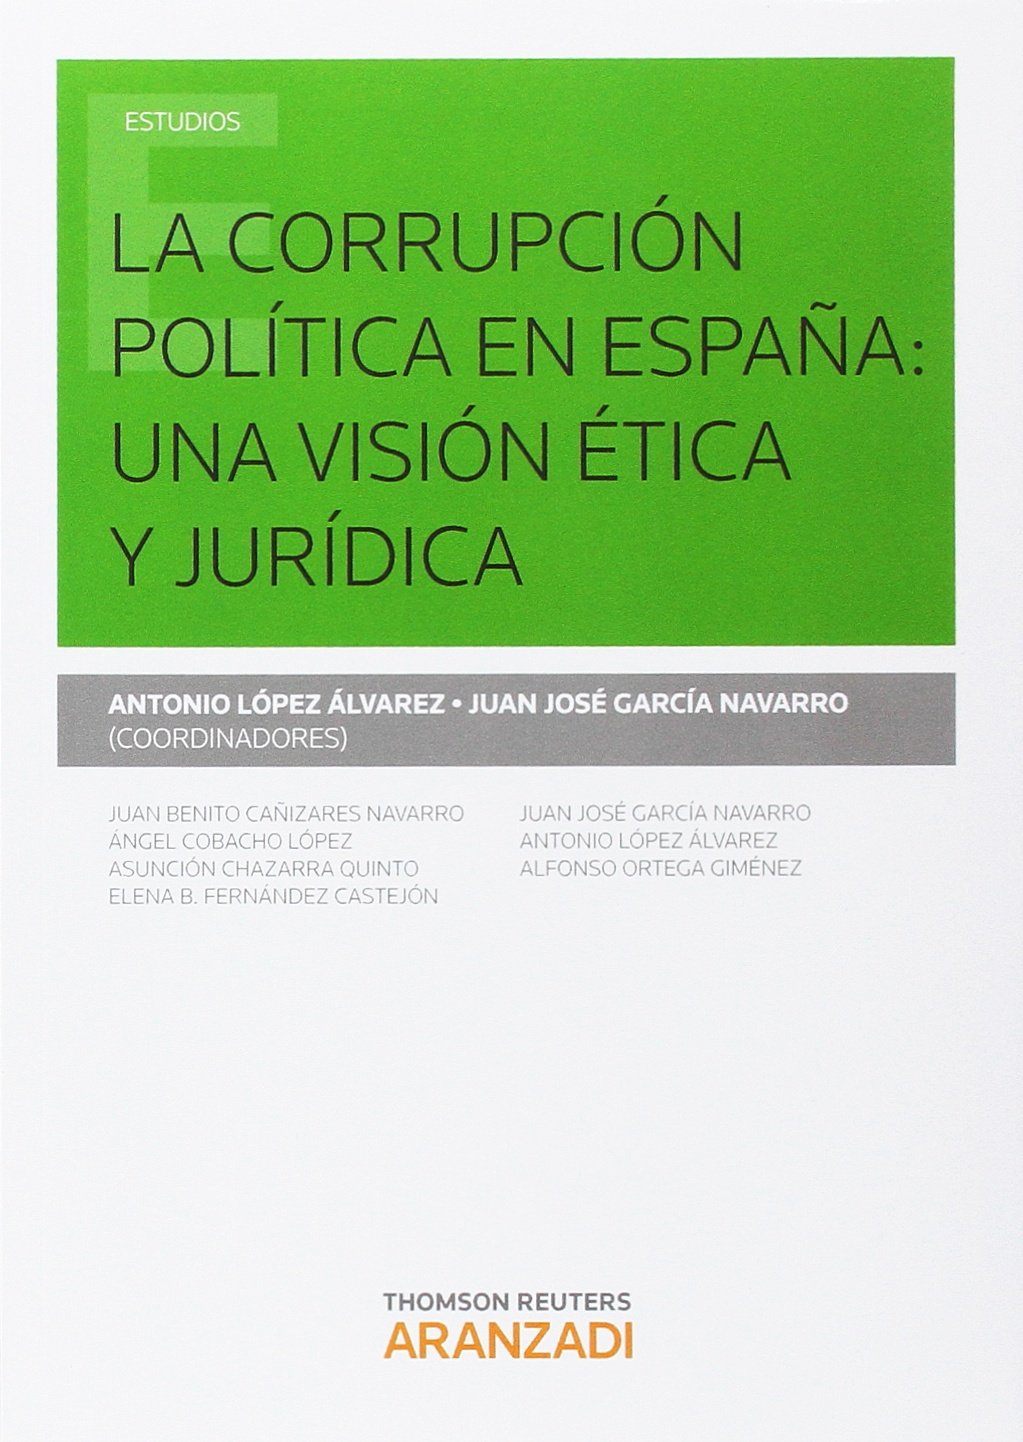 Imagen de portada del libro La corrupción política en España